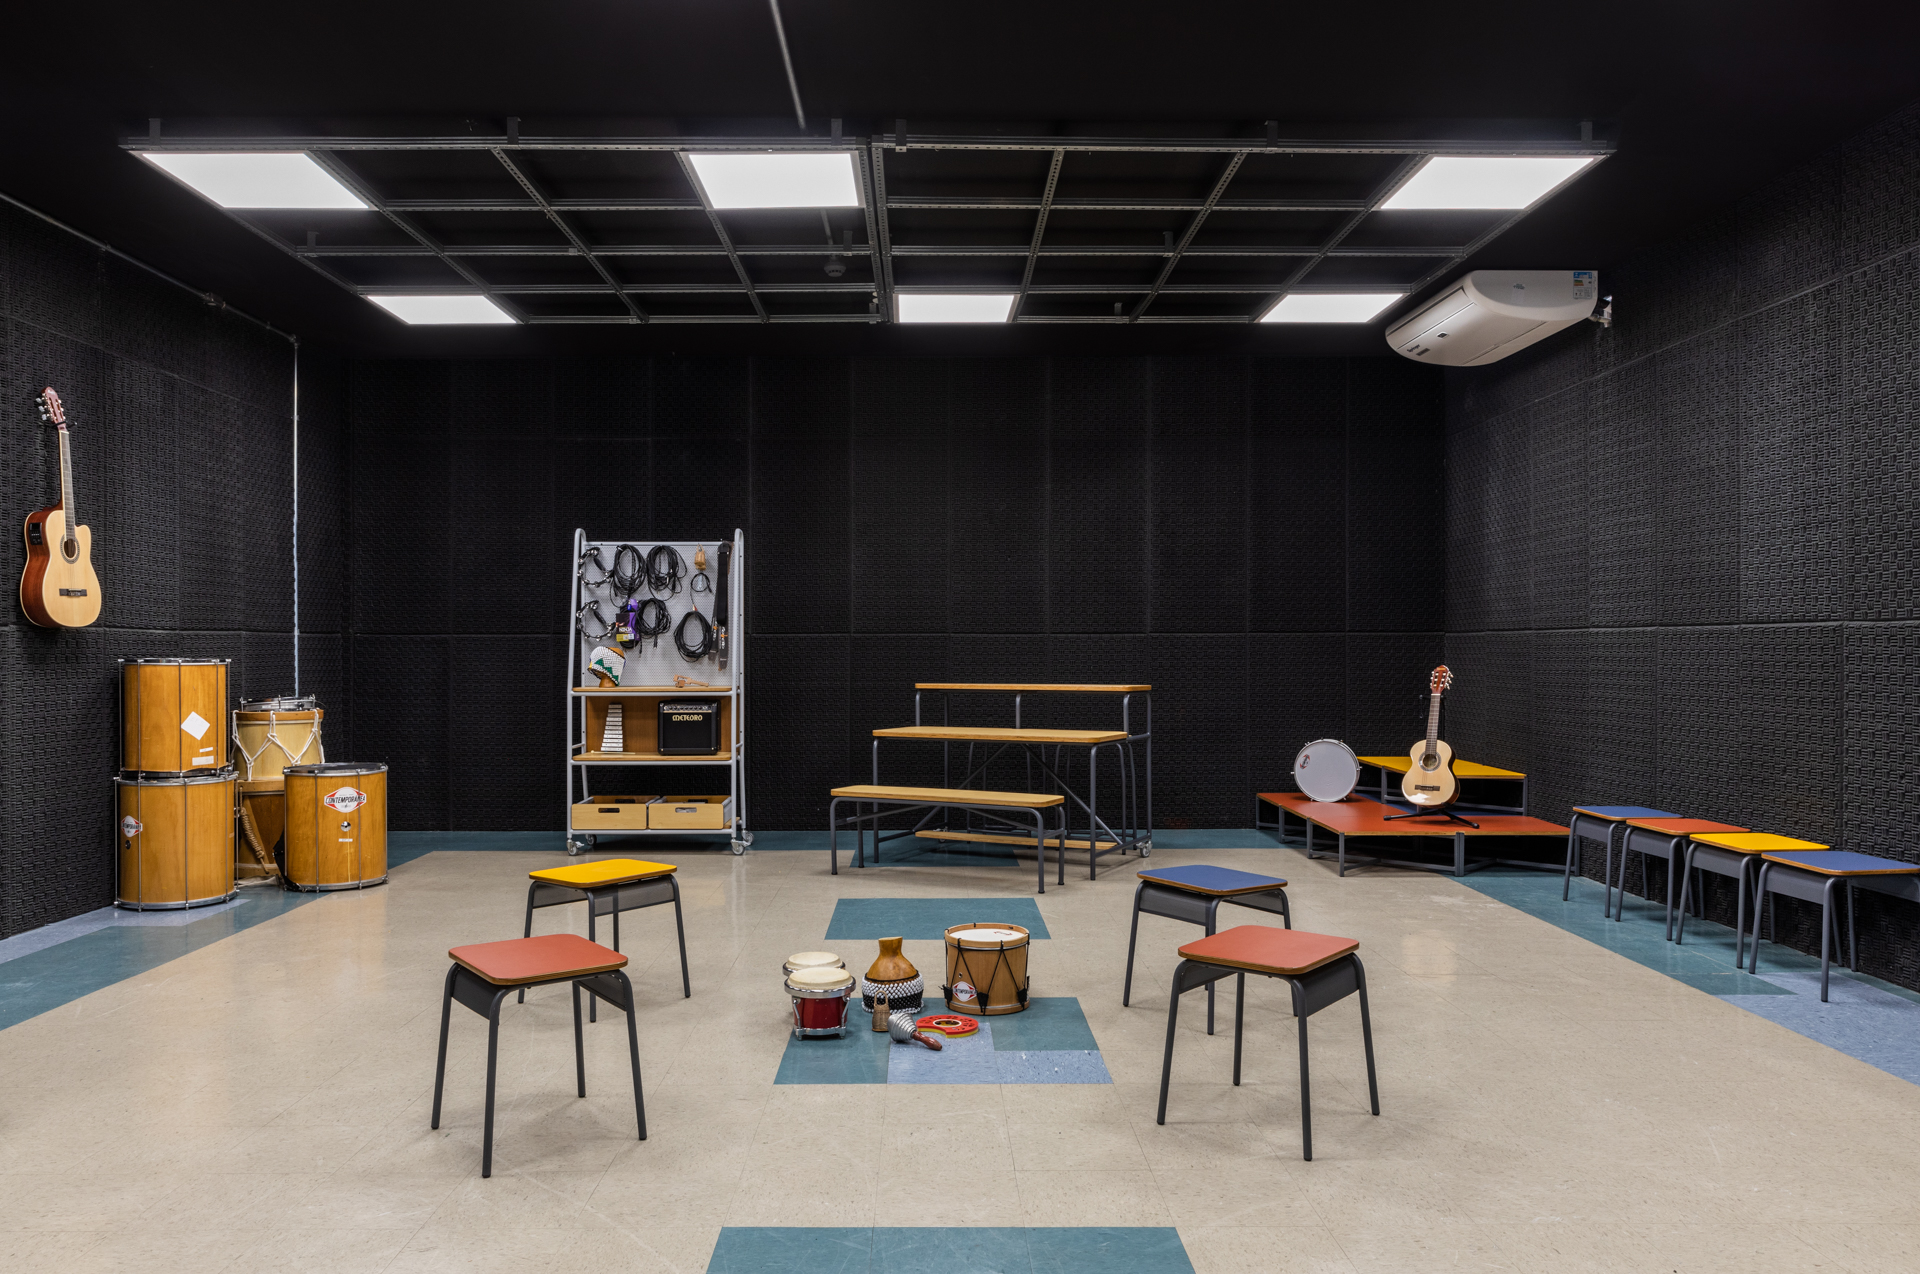 sala de música com paredes revestidas de preto, móveis e instrumentos espalhados pelo local